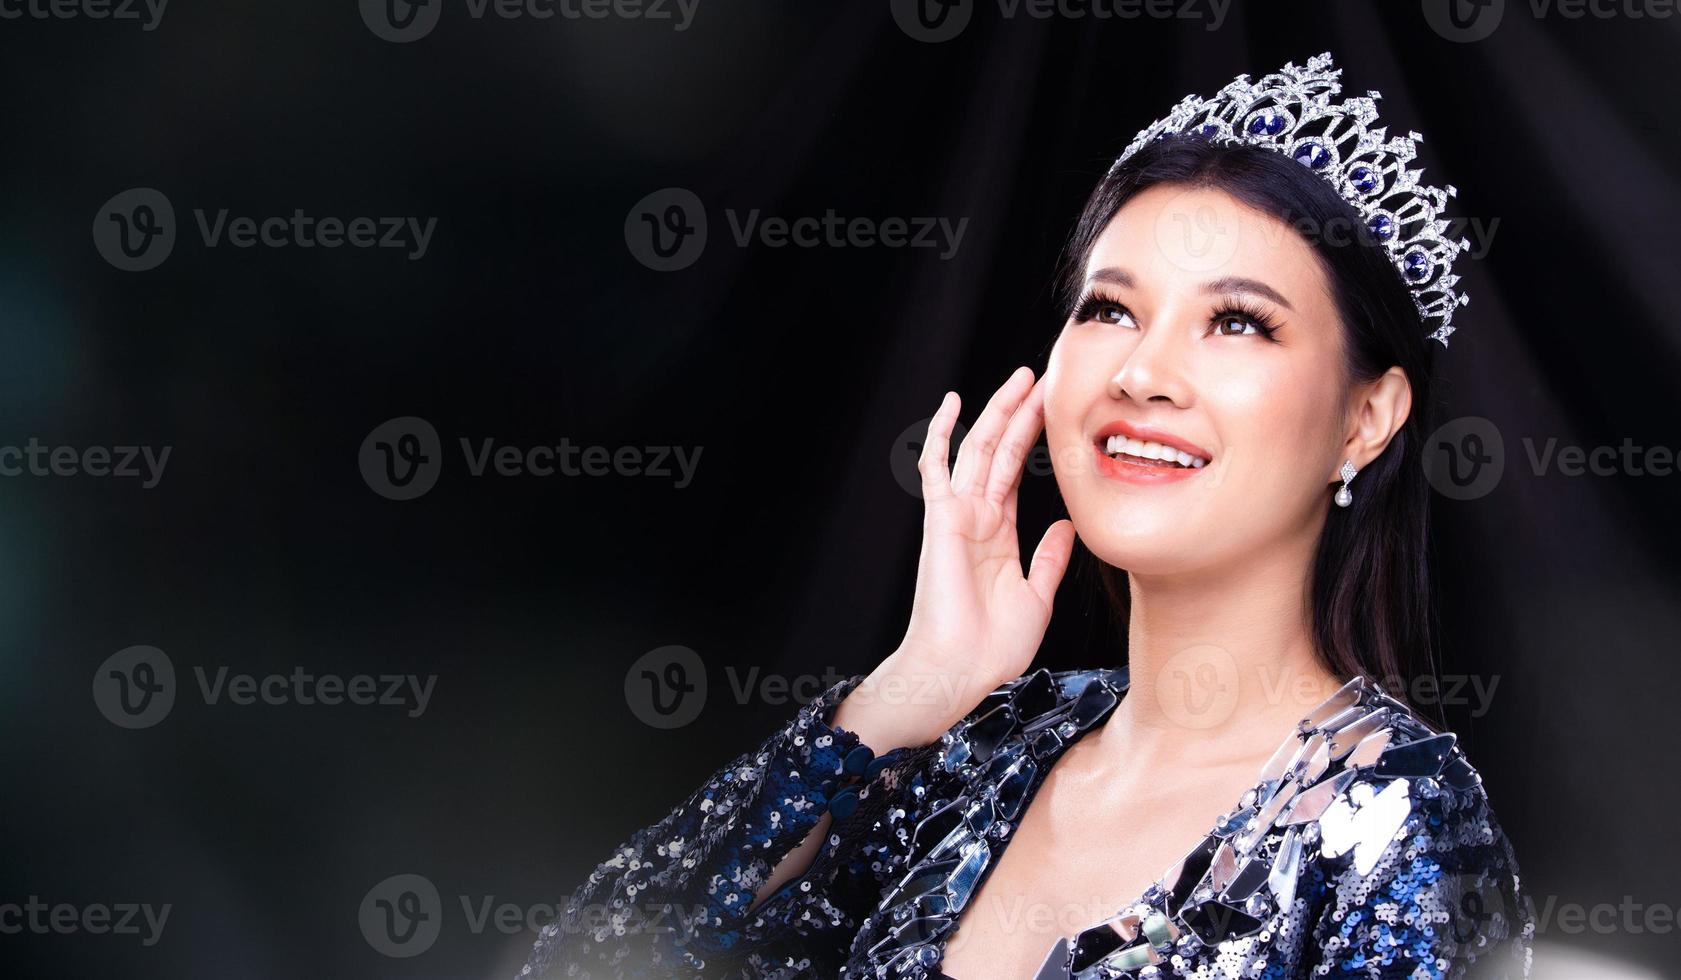 portrait du concours de beauté miss pageant en robe de soirée à sequins bleus avec couronne de diamants scintillants, une femme asiatique se sent heureuse de sourire et pose beaucoup de style différent sur la fumée noire photo